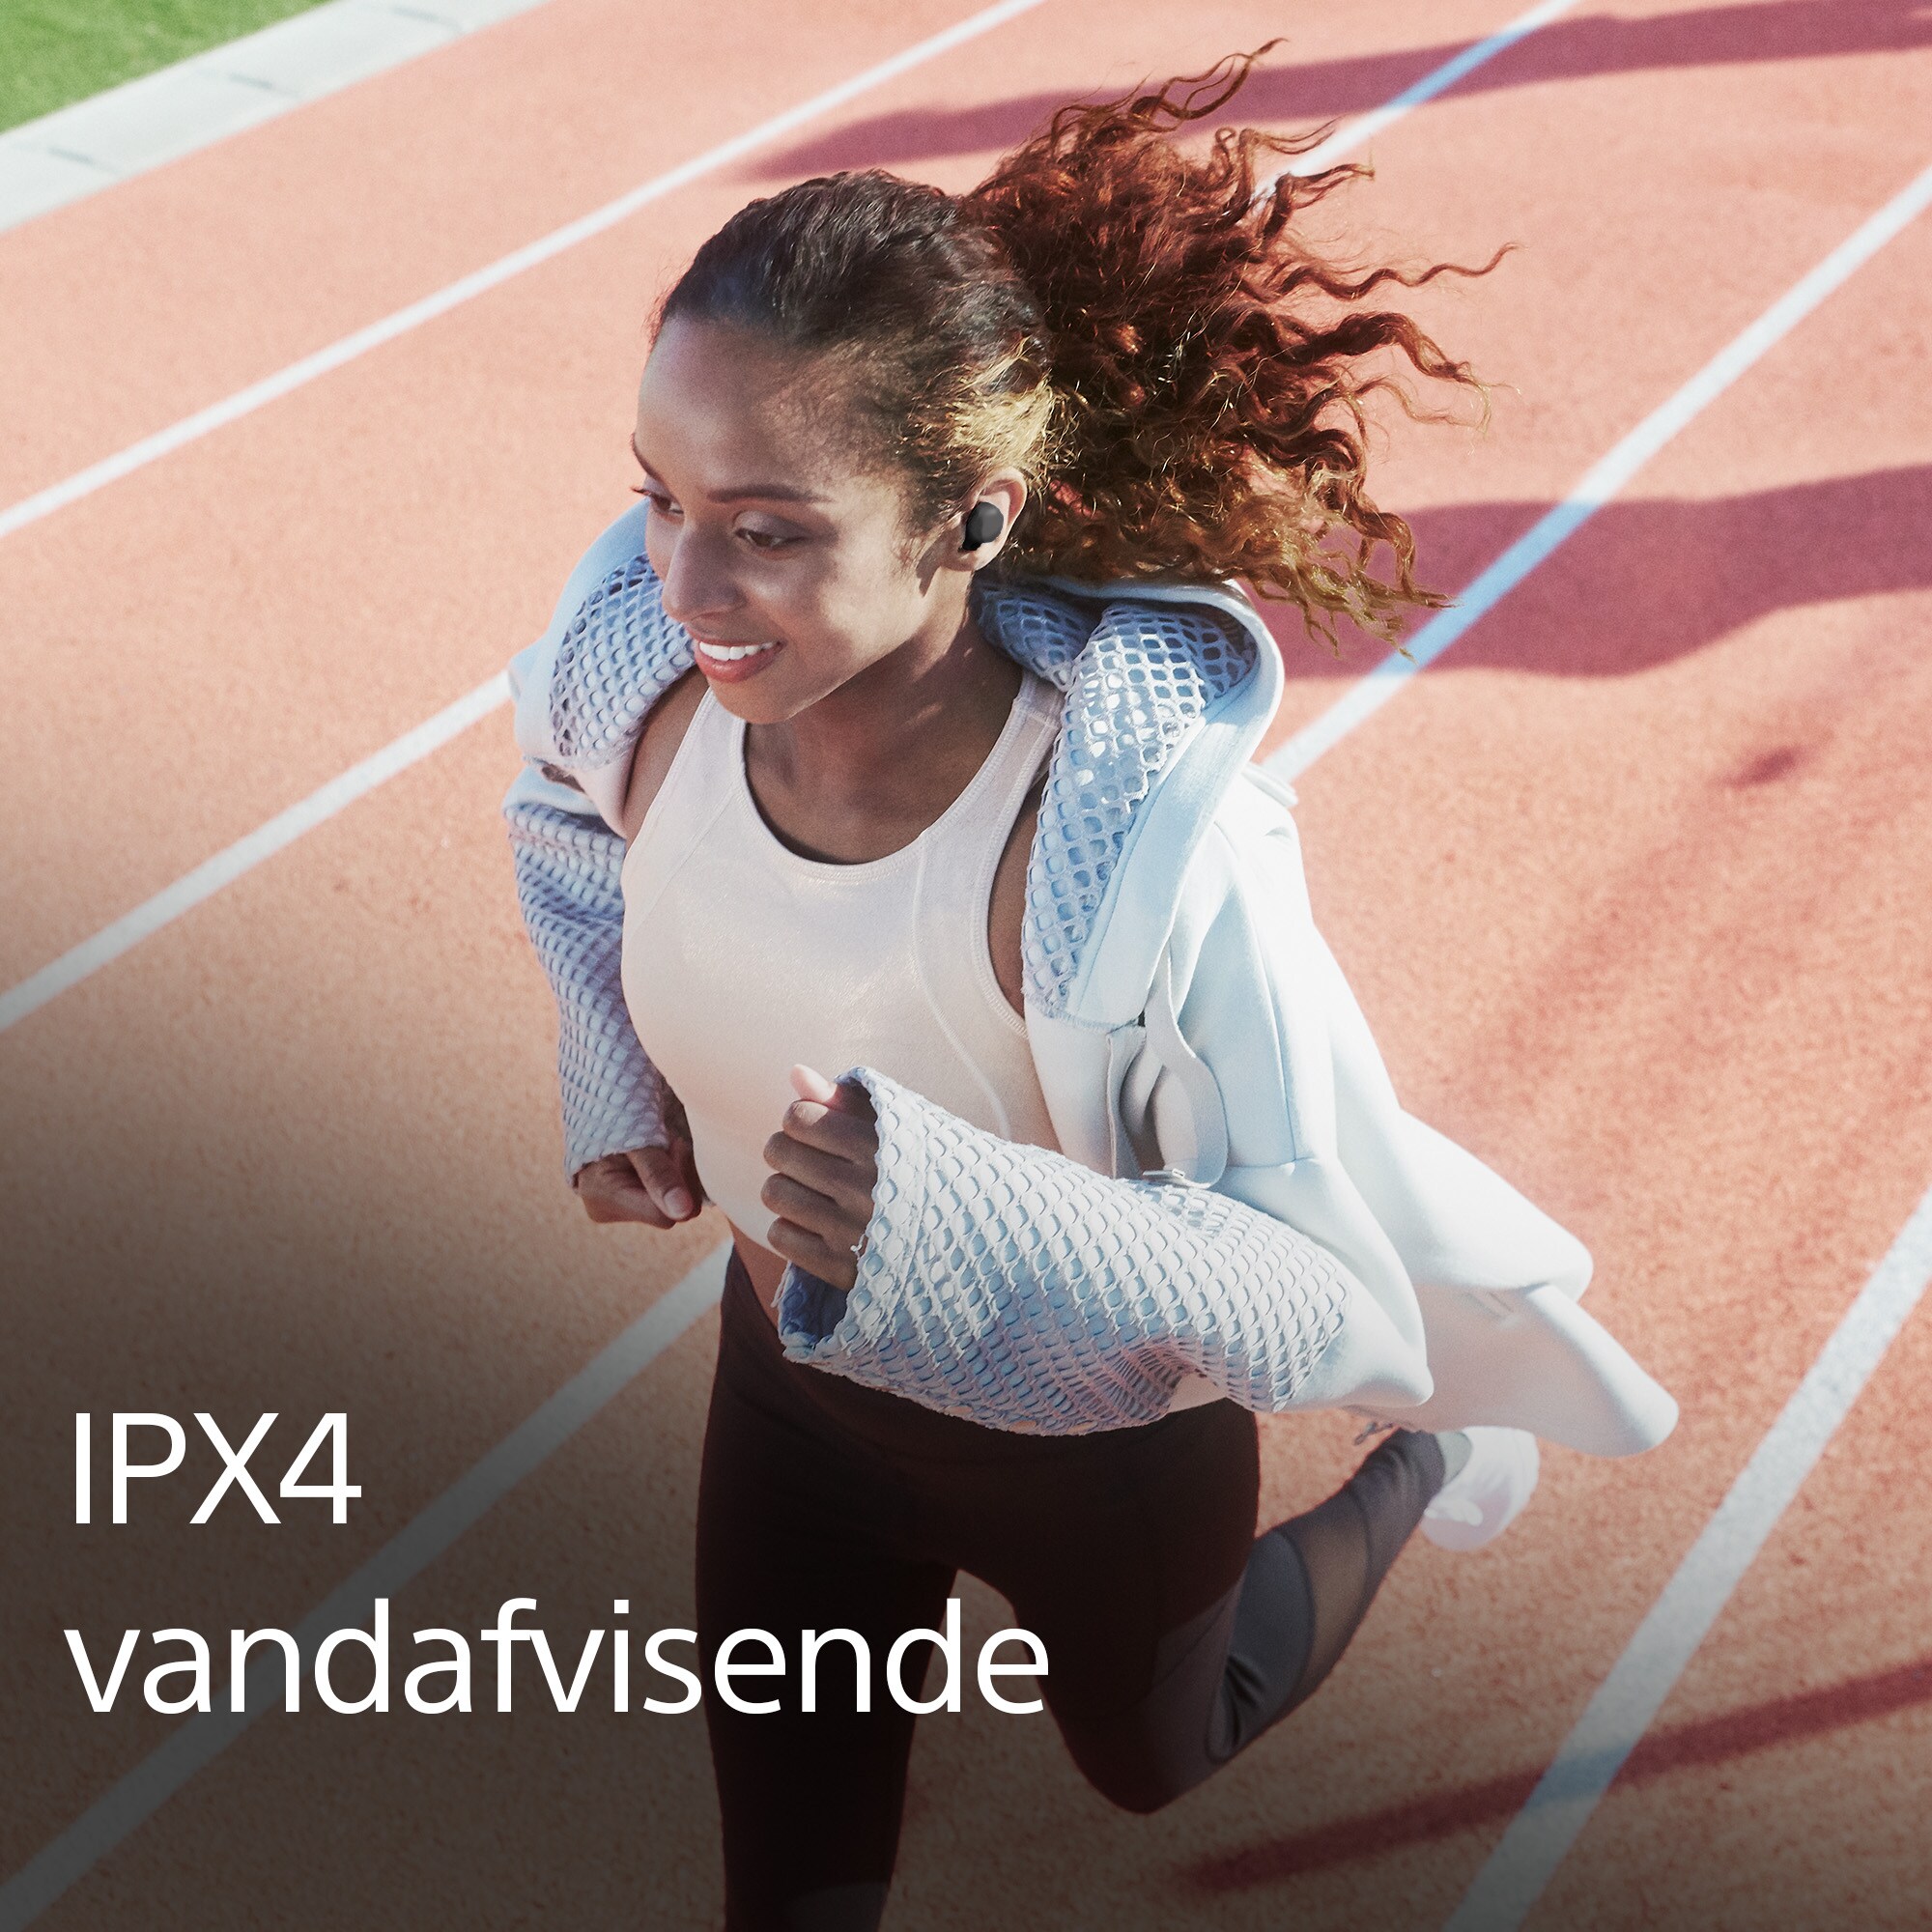 Kvinde, der løber med LinkBuds og tekst om IPX4